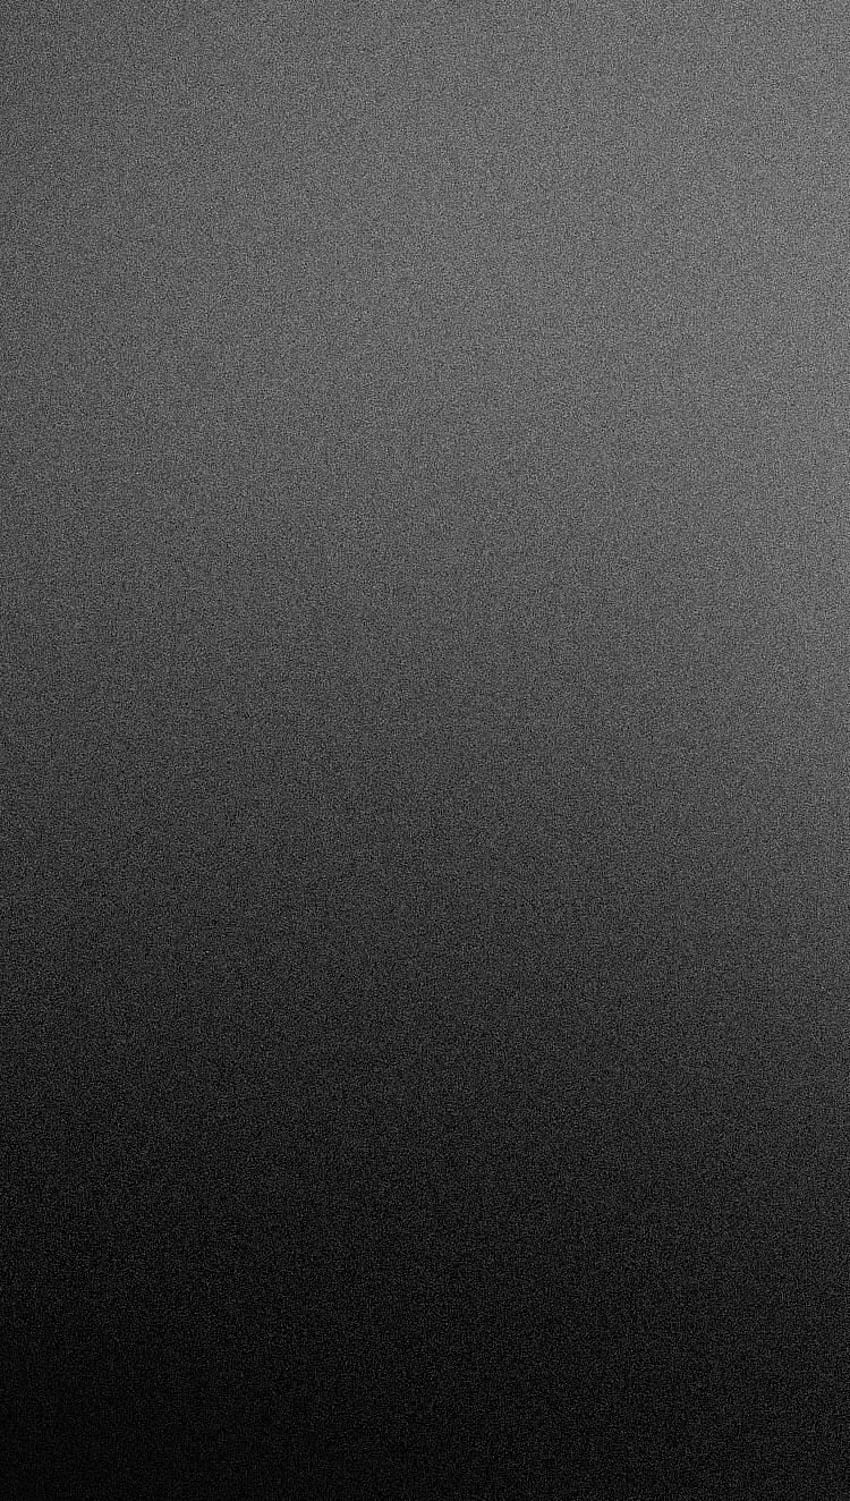 Gradien Beku Hitam Matte. Latar belakang hitam , Ponsel hitam , iPhone hitam, Matte Grey wallpaper ponsel HD